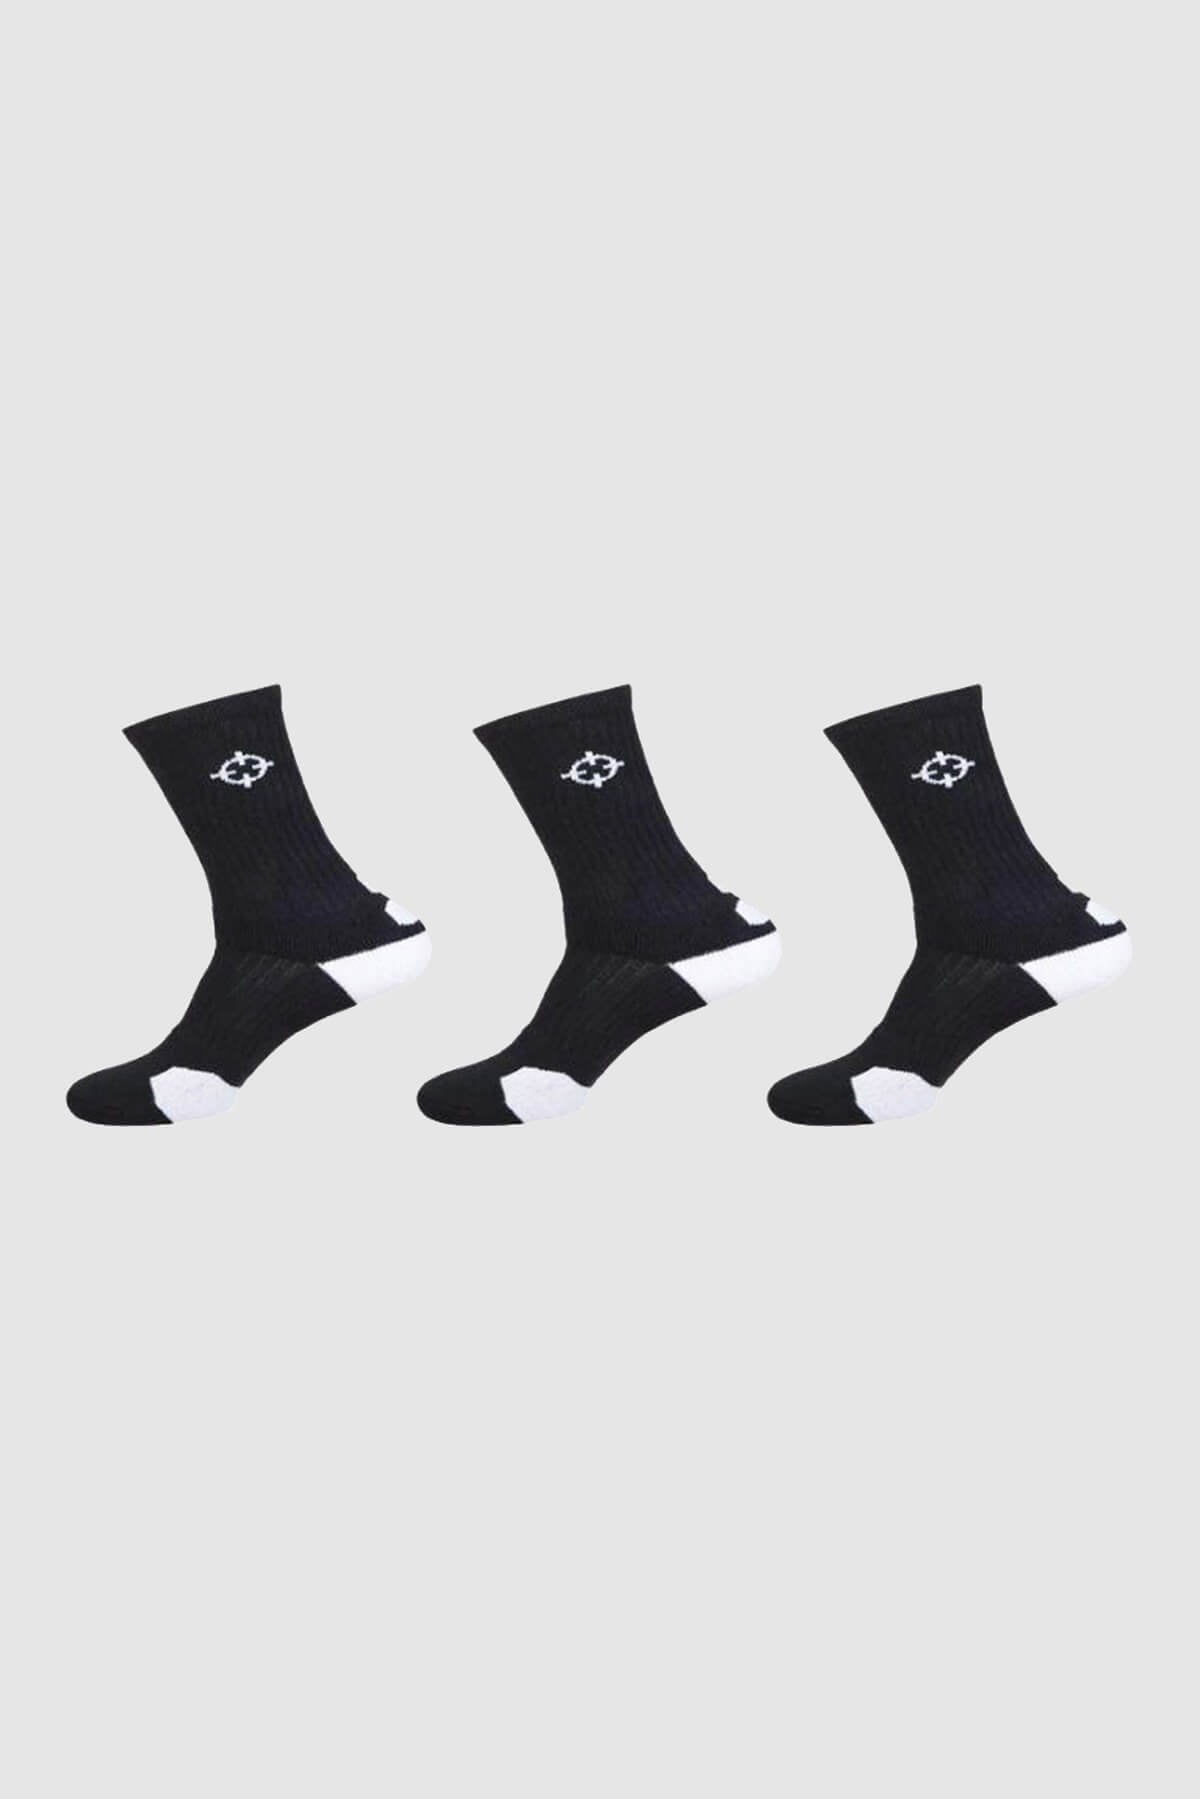 Black/White|Rigorer Kids Crew Socks